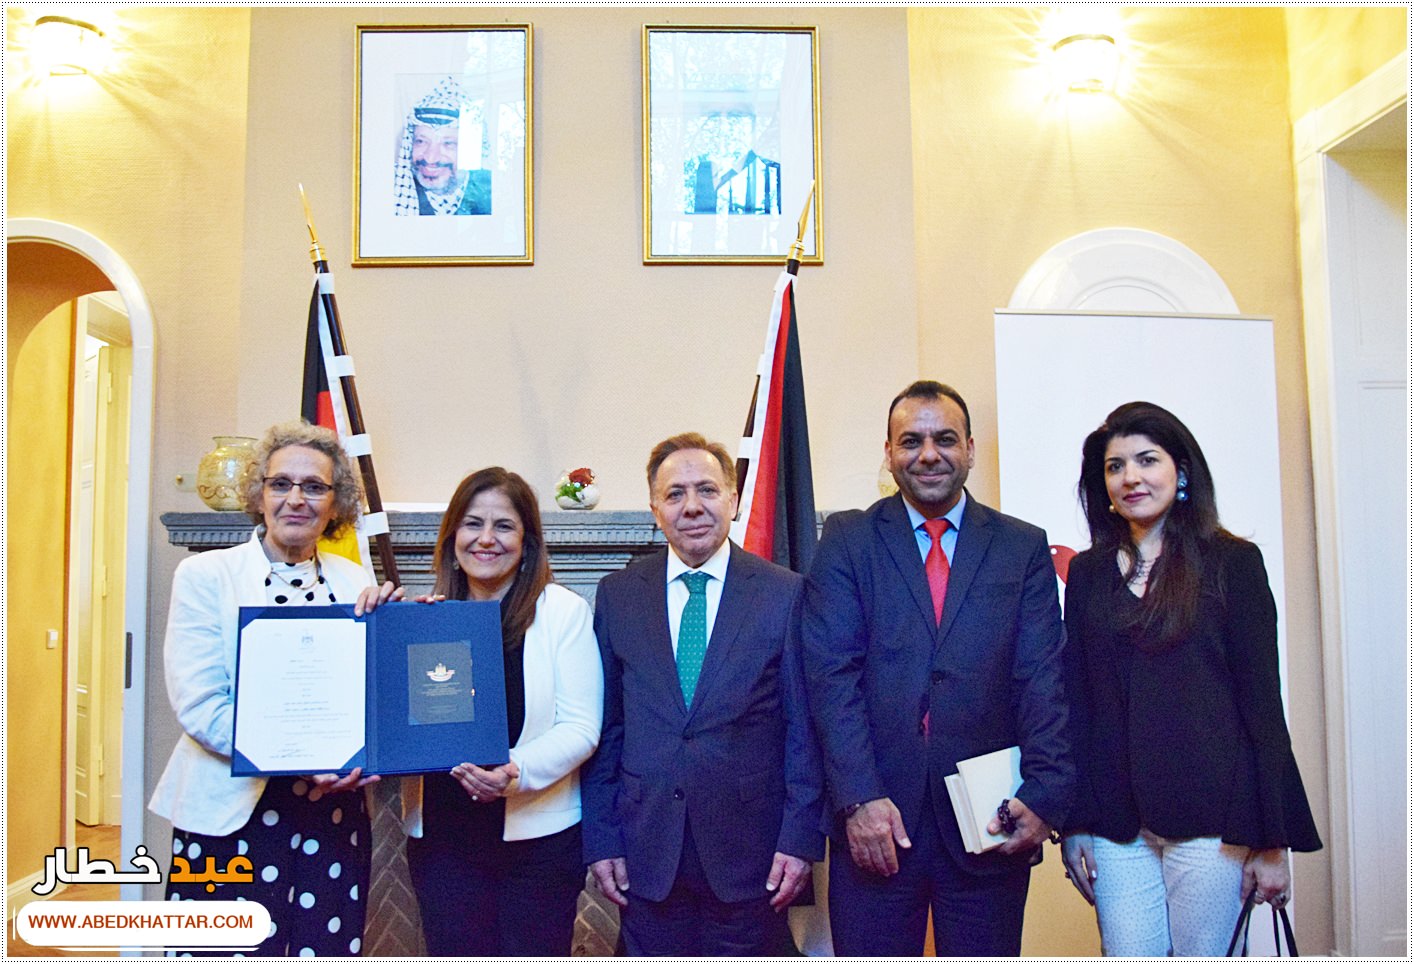 السيد الرئيس محمود عباس يمنح الشاعر والفنان العراقي مؤيد الراوي وسام الثقافة والعلوم والفنون